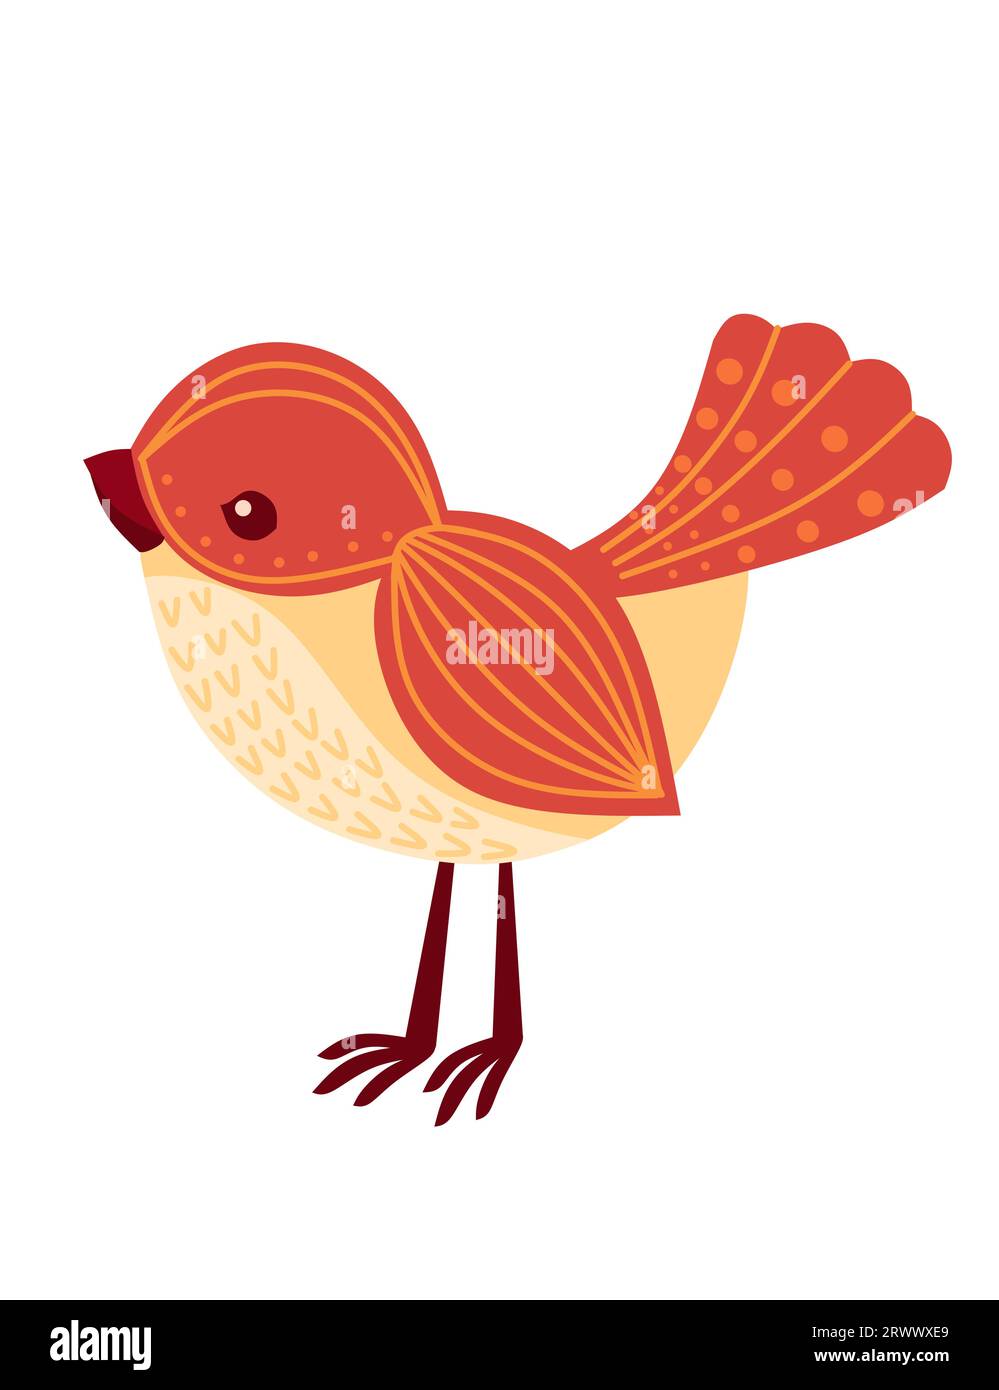 Petit oiseau de bande dessinée stylisé avec motif orange mignon illustration vectorielle de conception d'animaux isolé sur fond blanc Illustration de Vecteur